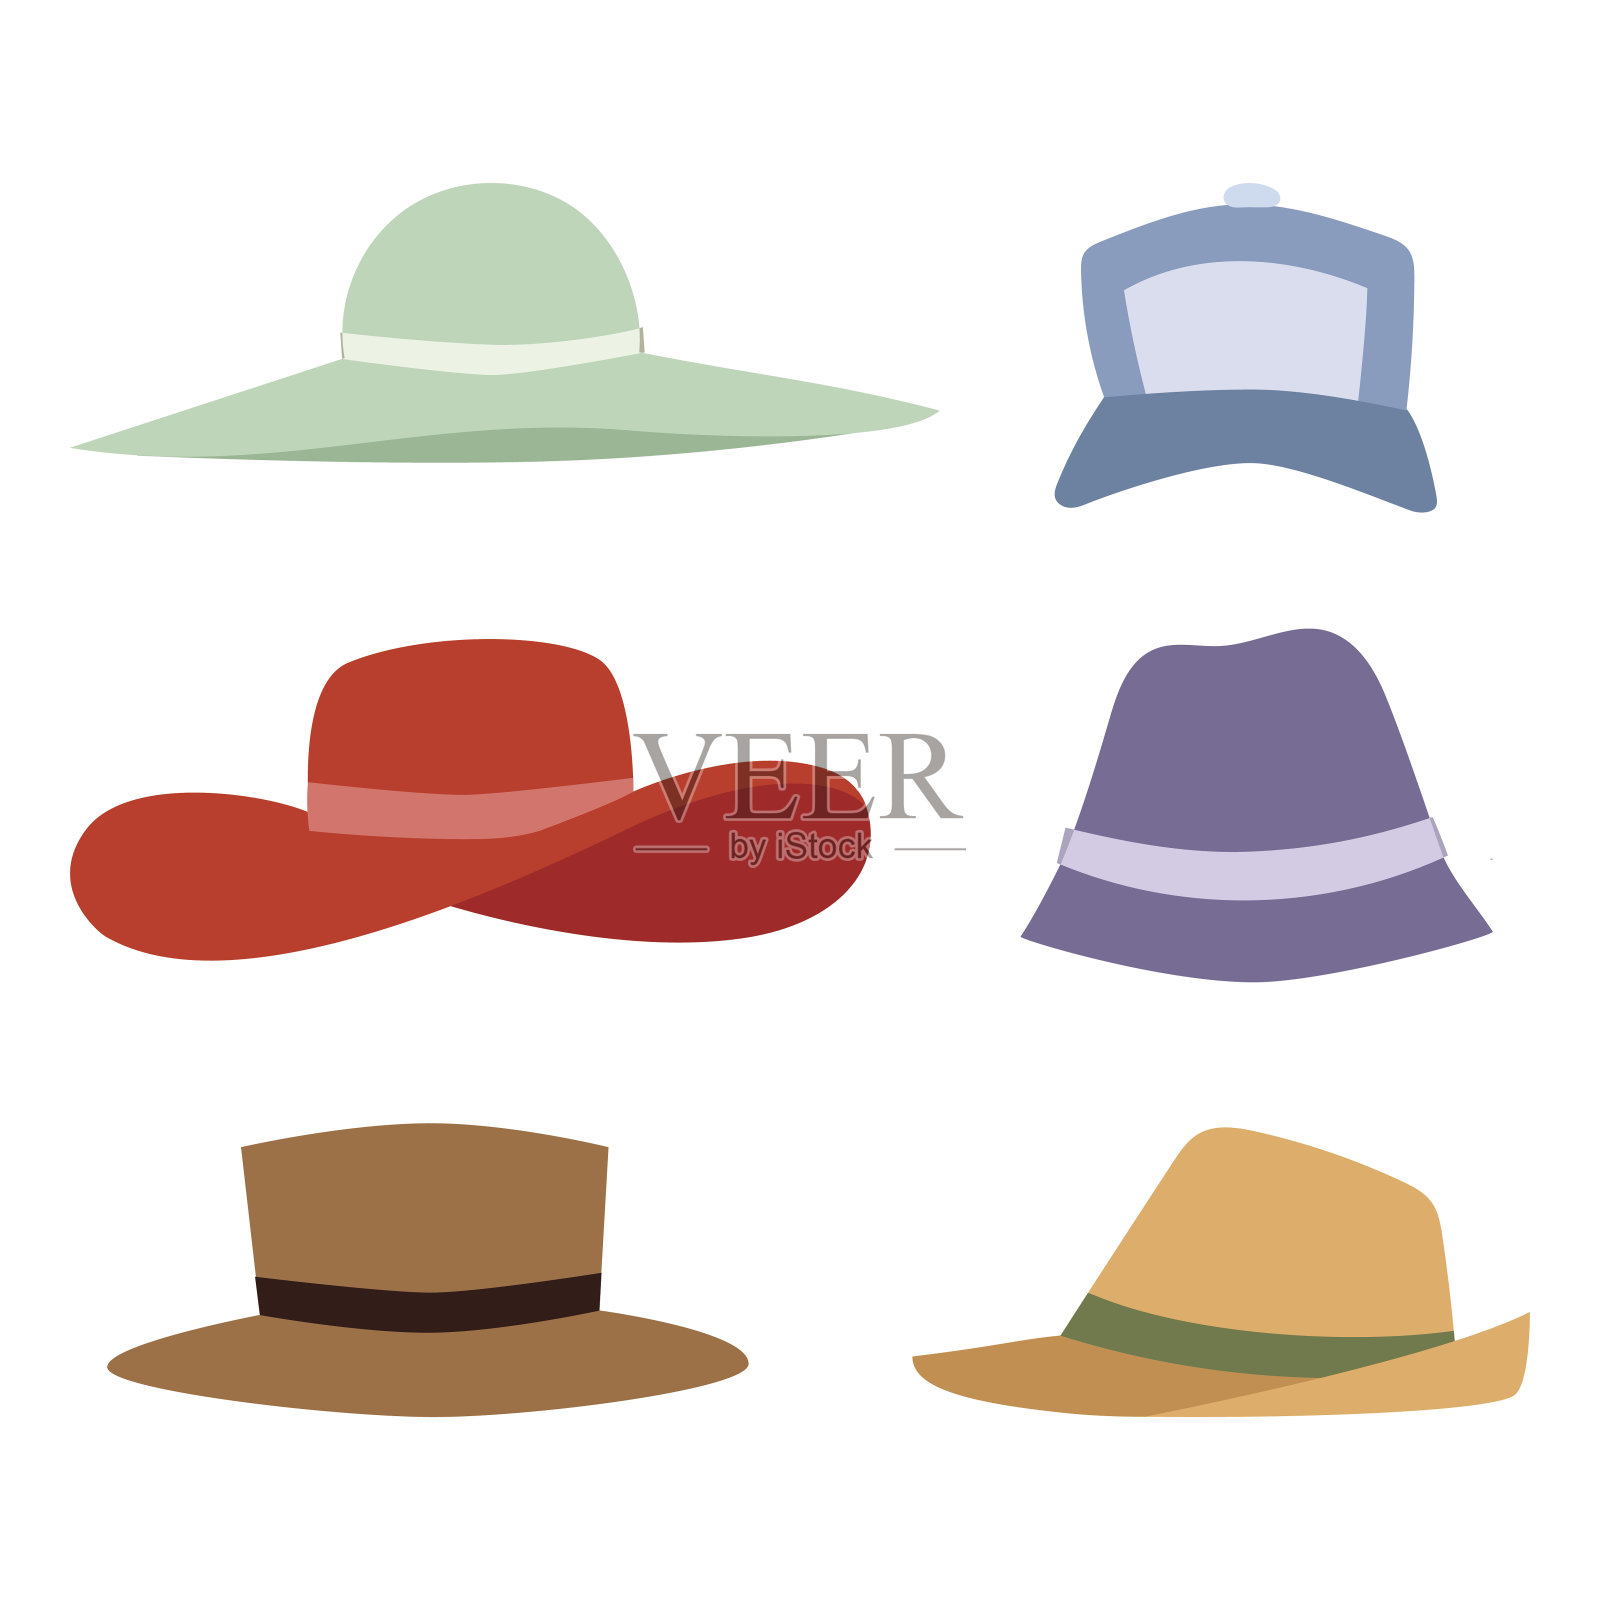 沙滩配饰夏季沙滩帽系列向量时尚沙滩旅行美头保护帽设计元素图片